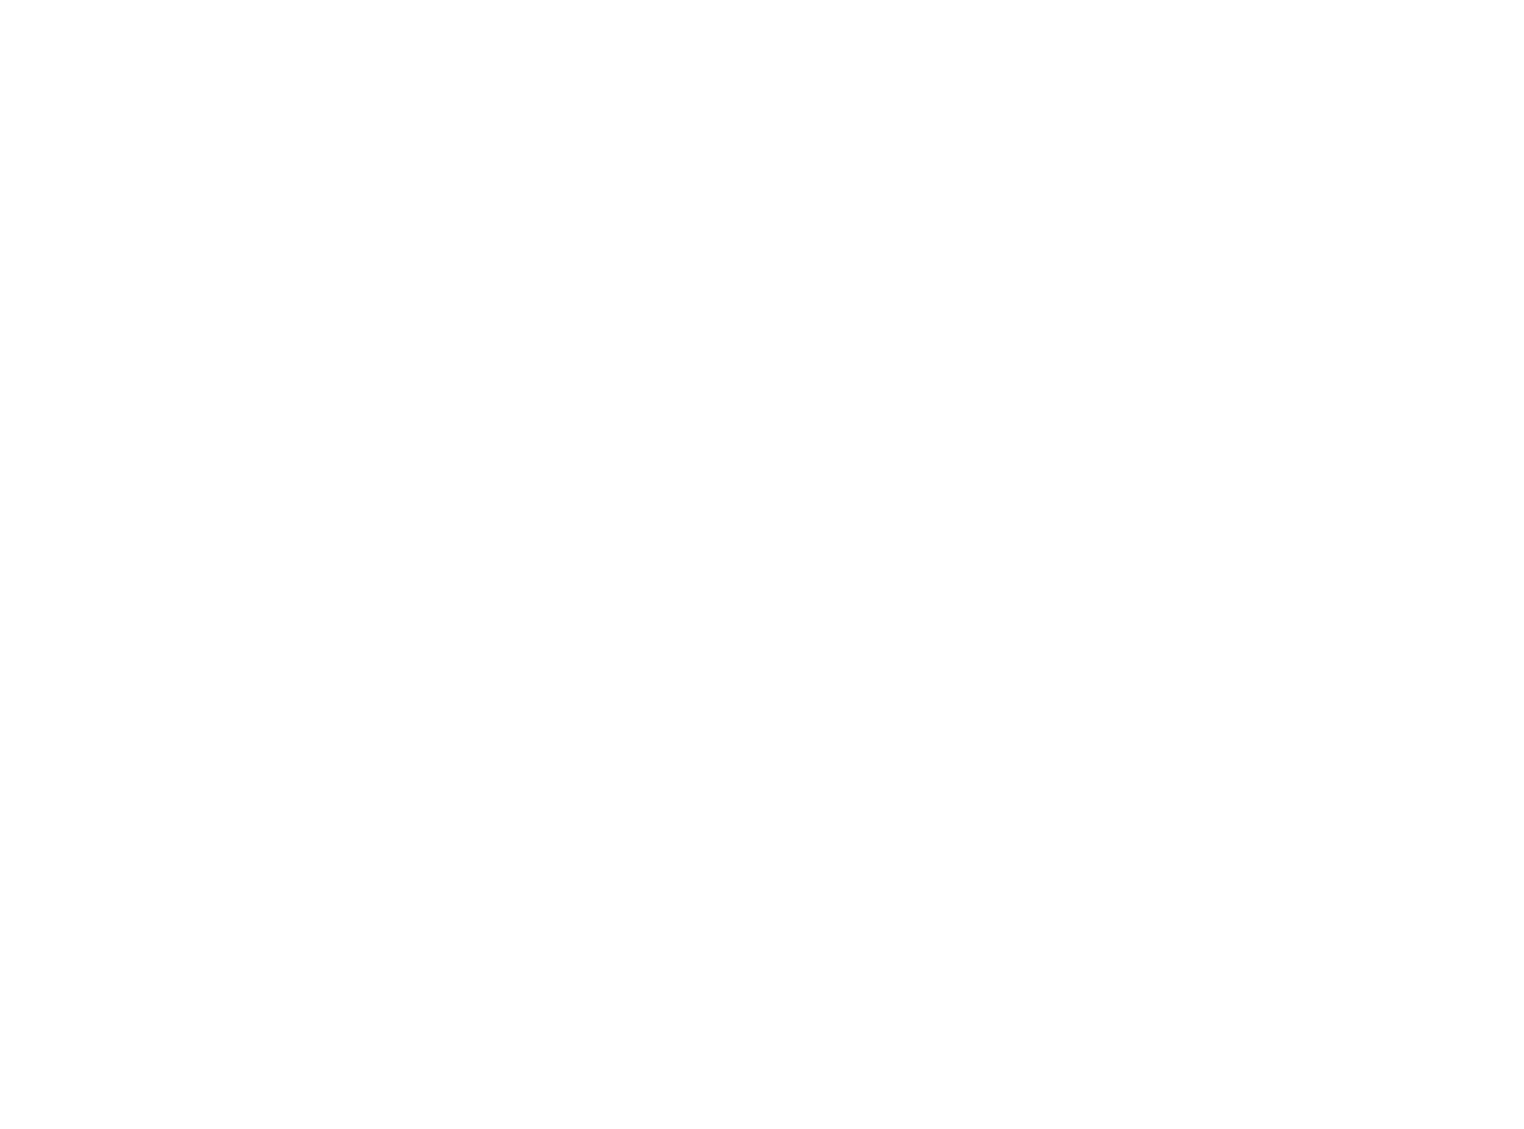 Sopra Steria Group Logo für dunkle Hintergründe (transparentes PNG)